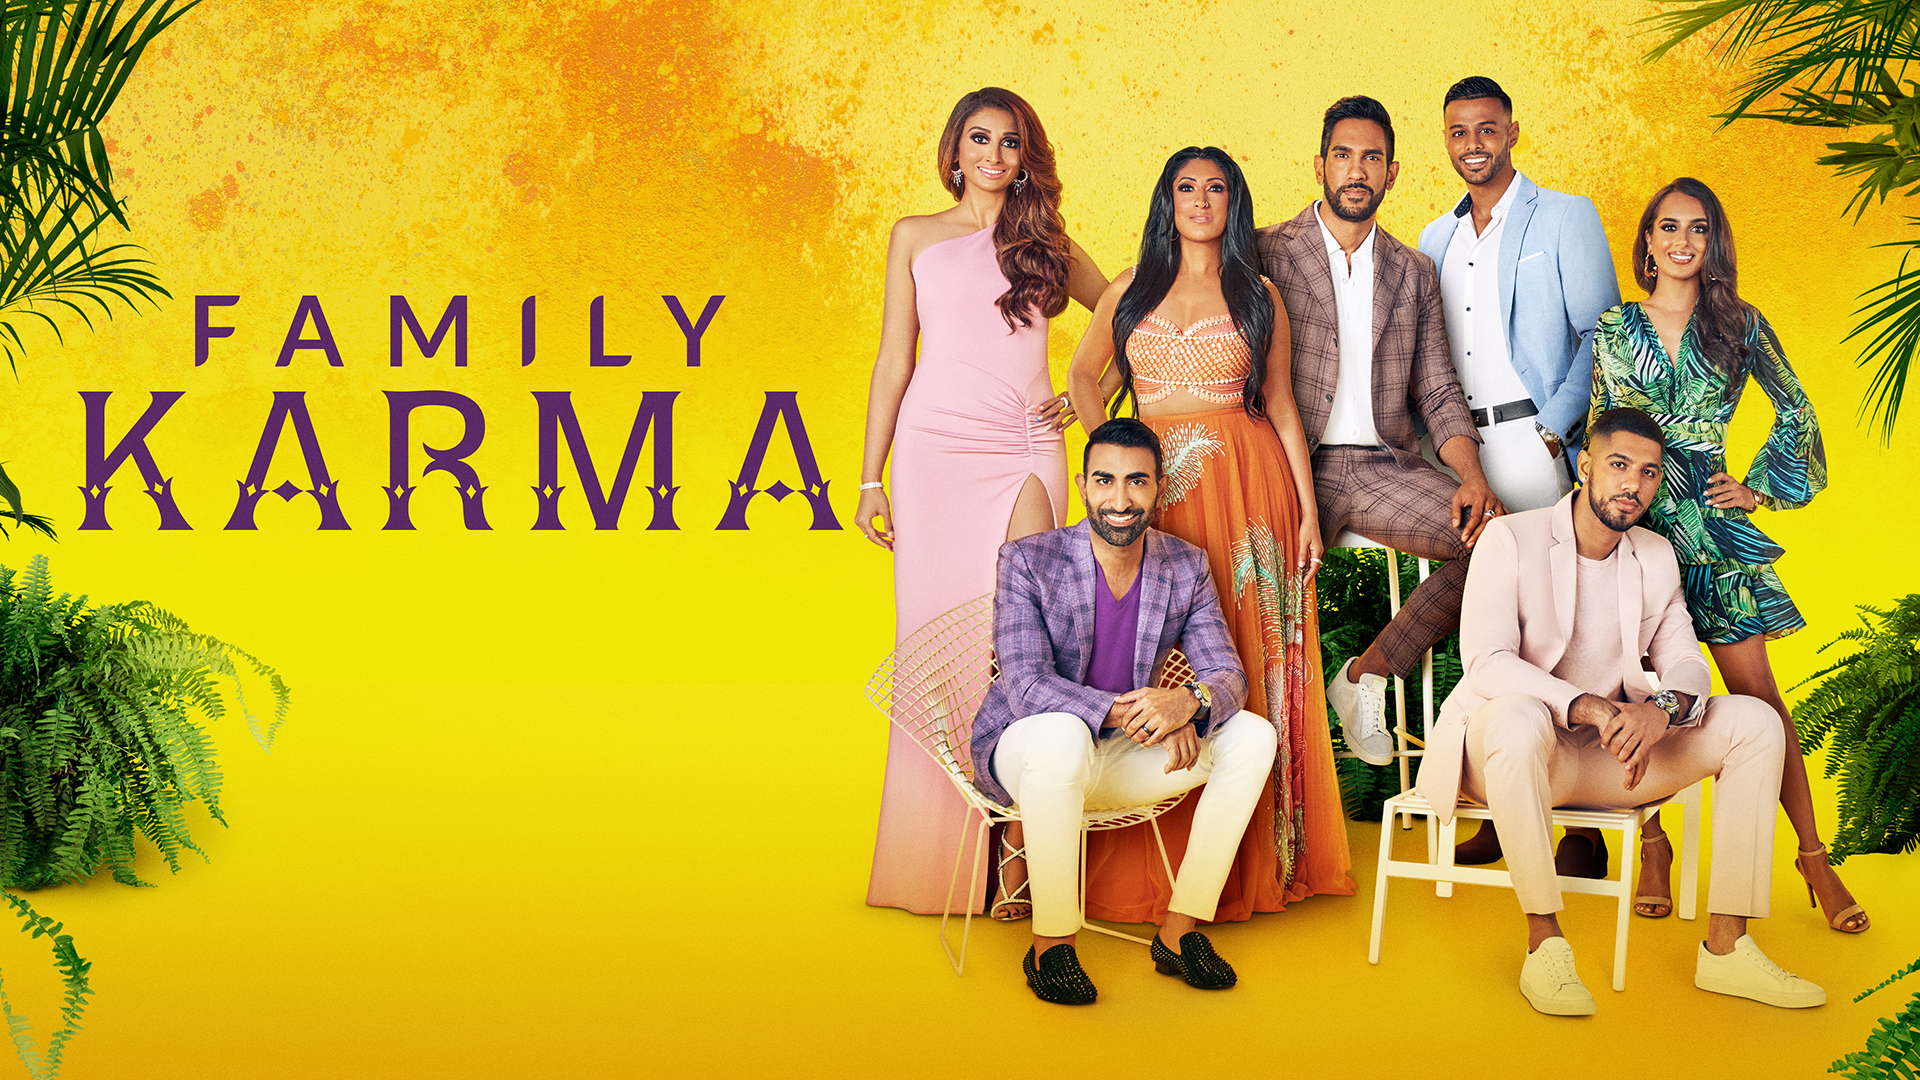 Family Karma - New Season Sunday November 6